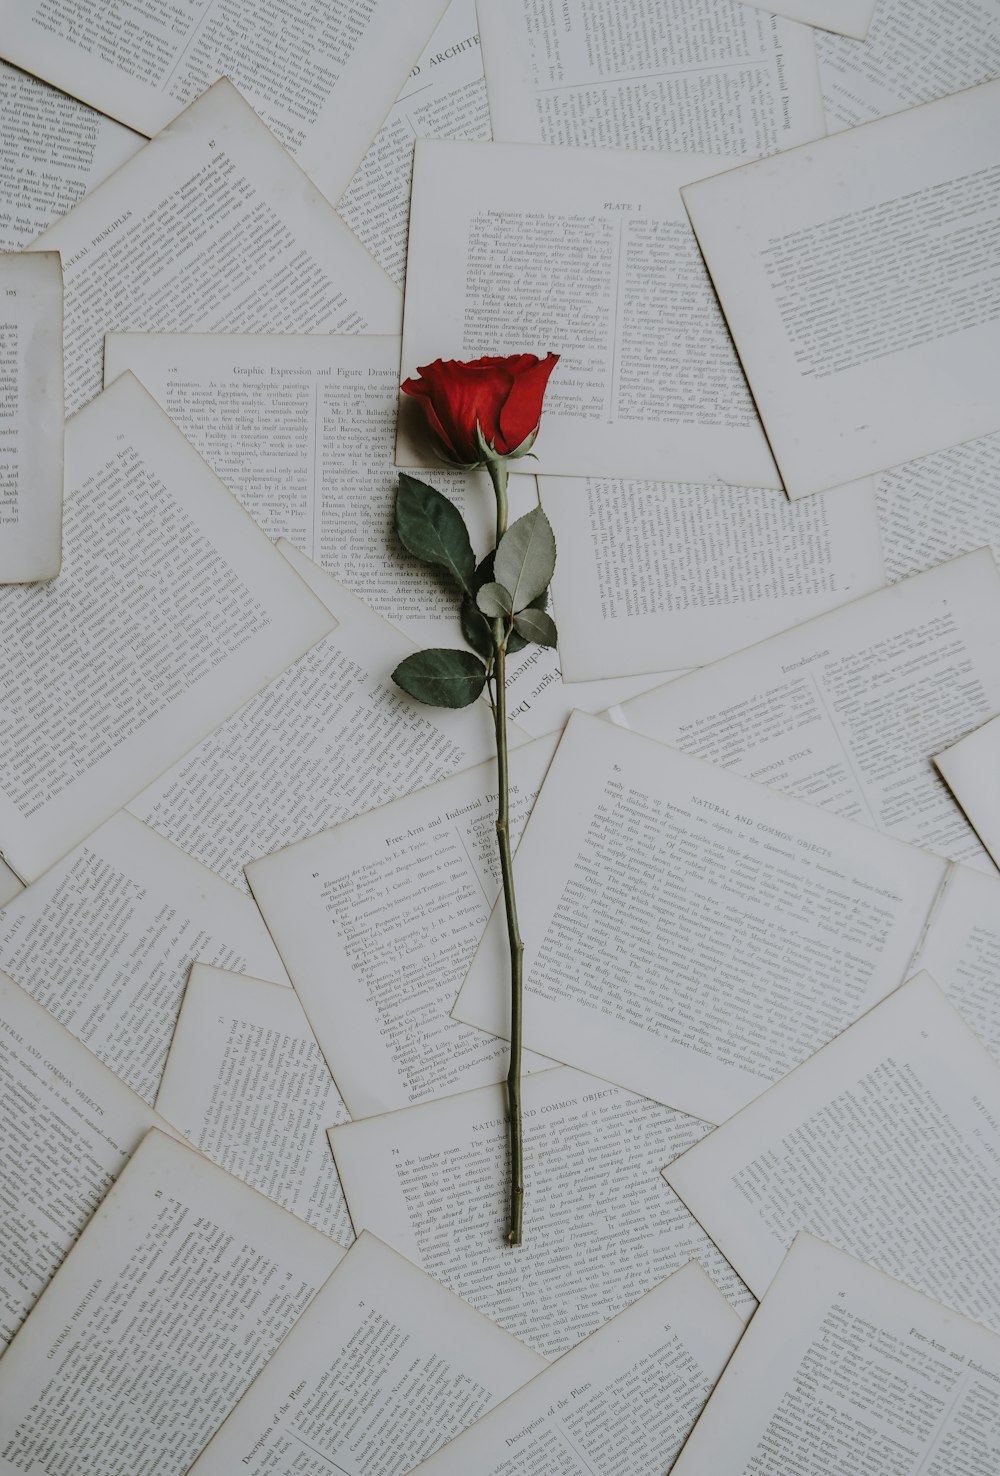 rosa rossa su fogli di libro